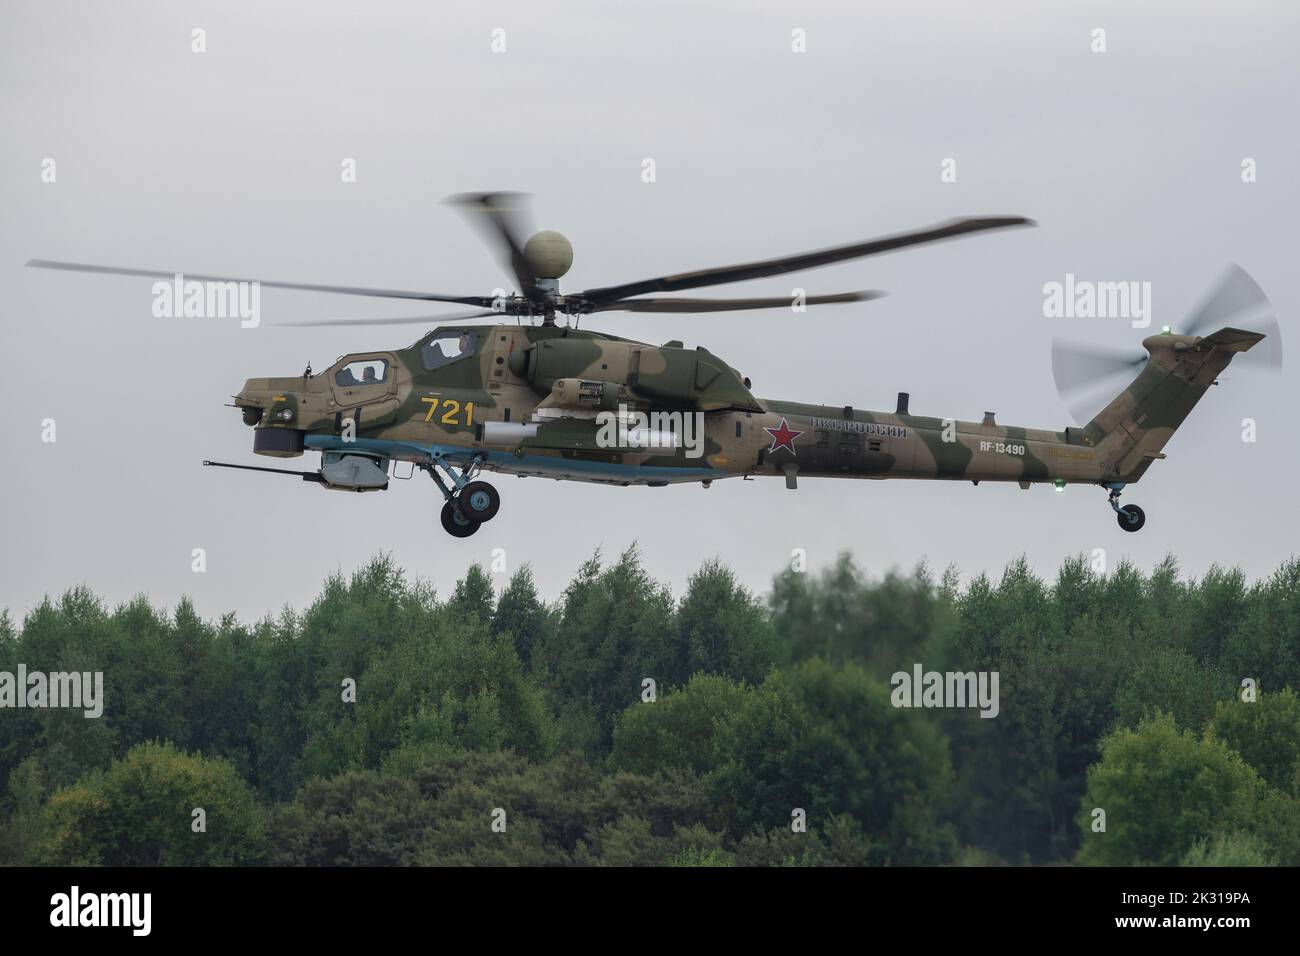 KUBINKA, RUSSLAND - 19. AUGUST 2022: Russischer Militärhubschrauber Mi-28nm (RF-13490) fliegt an einem bewölkten Tag über den Wald Stockfoto